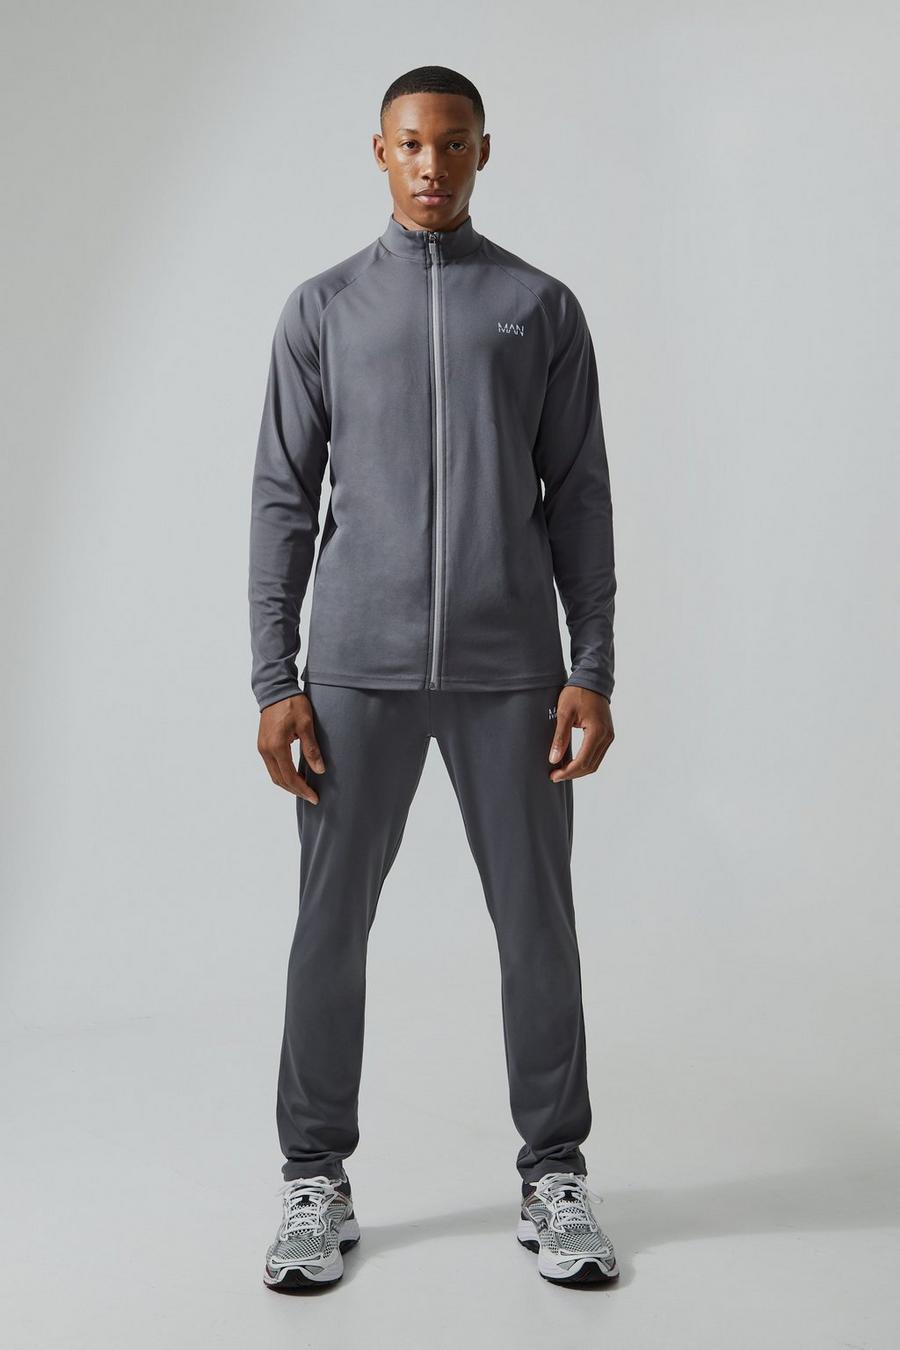 Man Active Trainingsanzug mit Trichterkragen, Charcoal grey